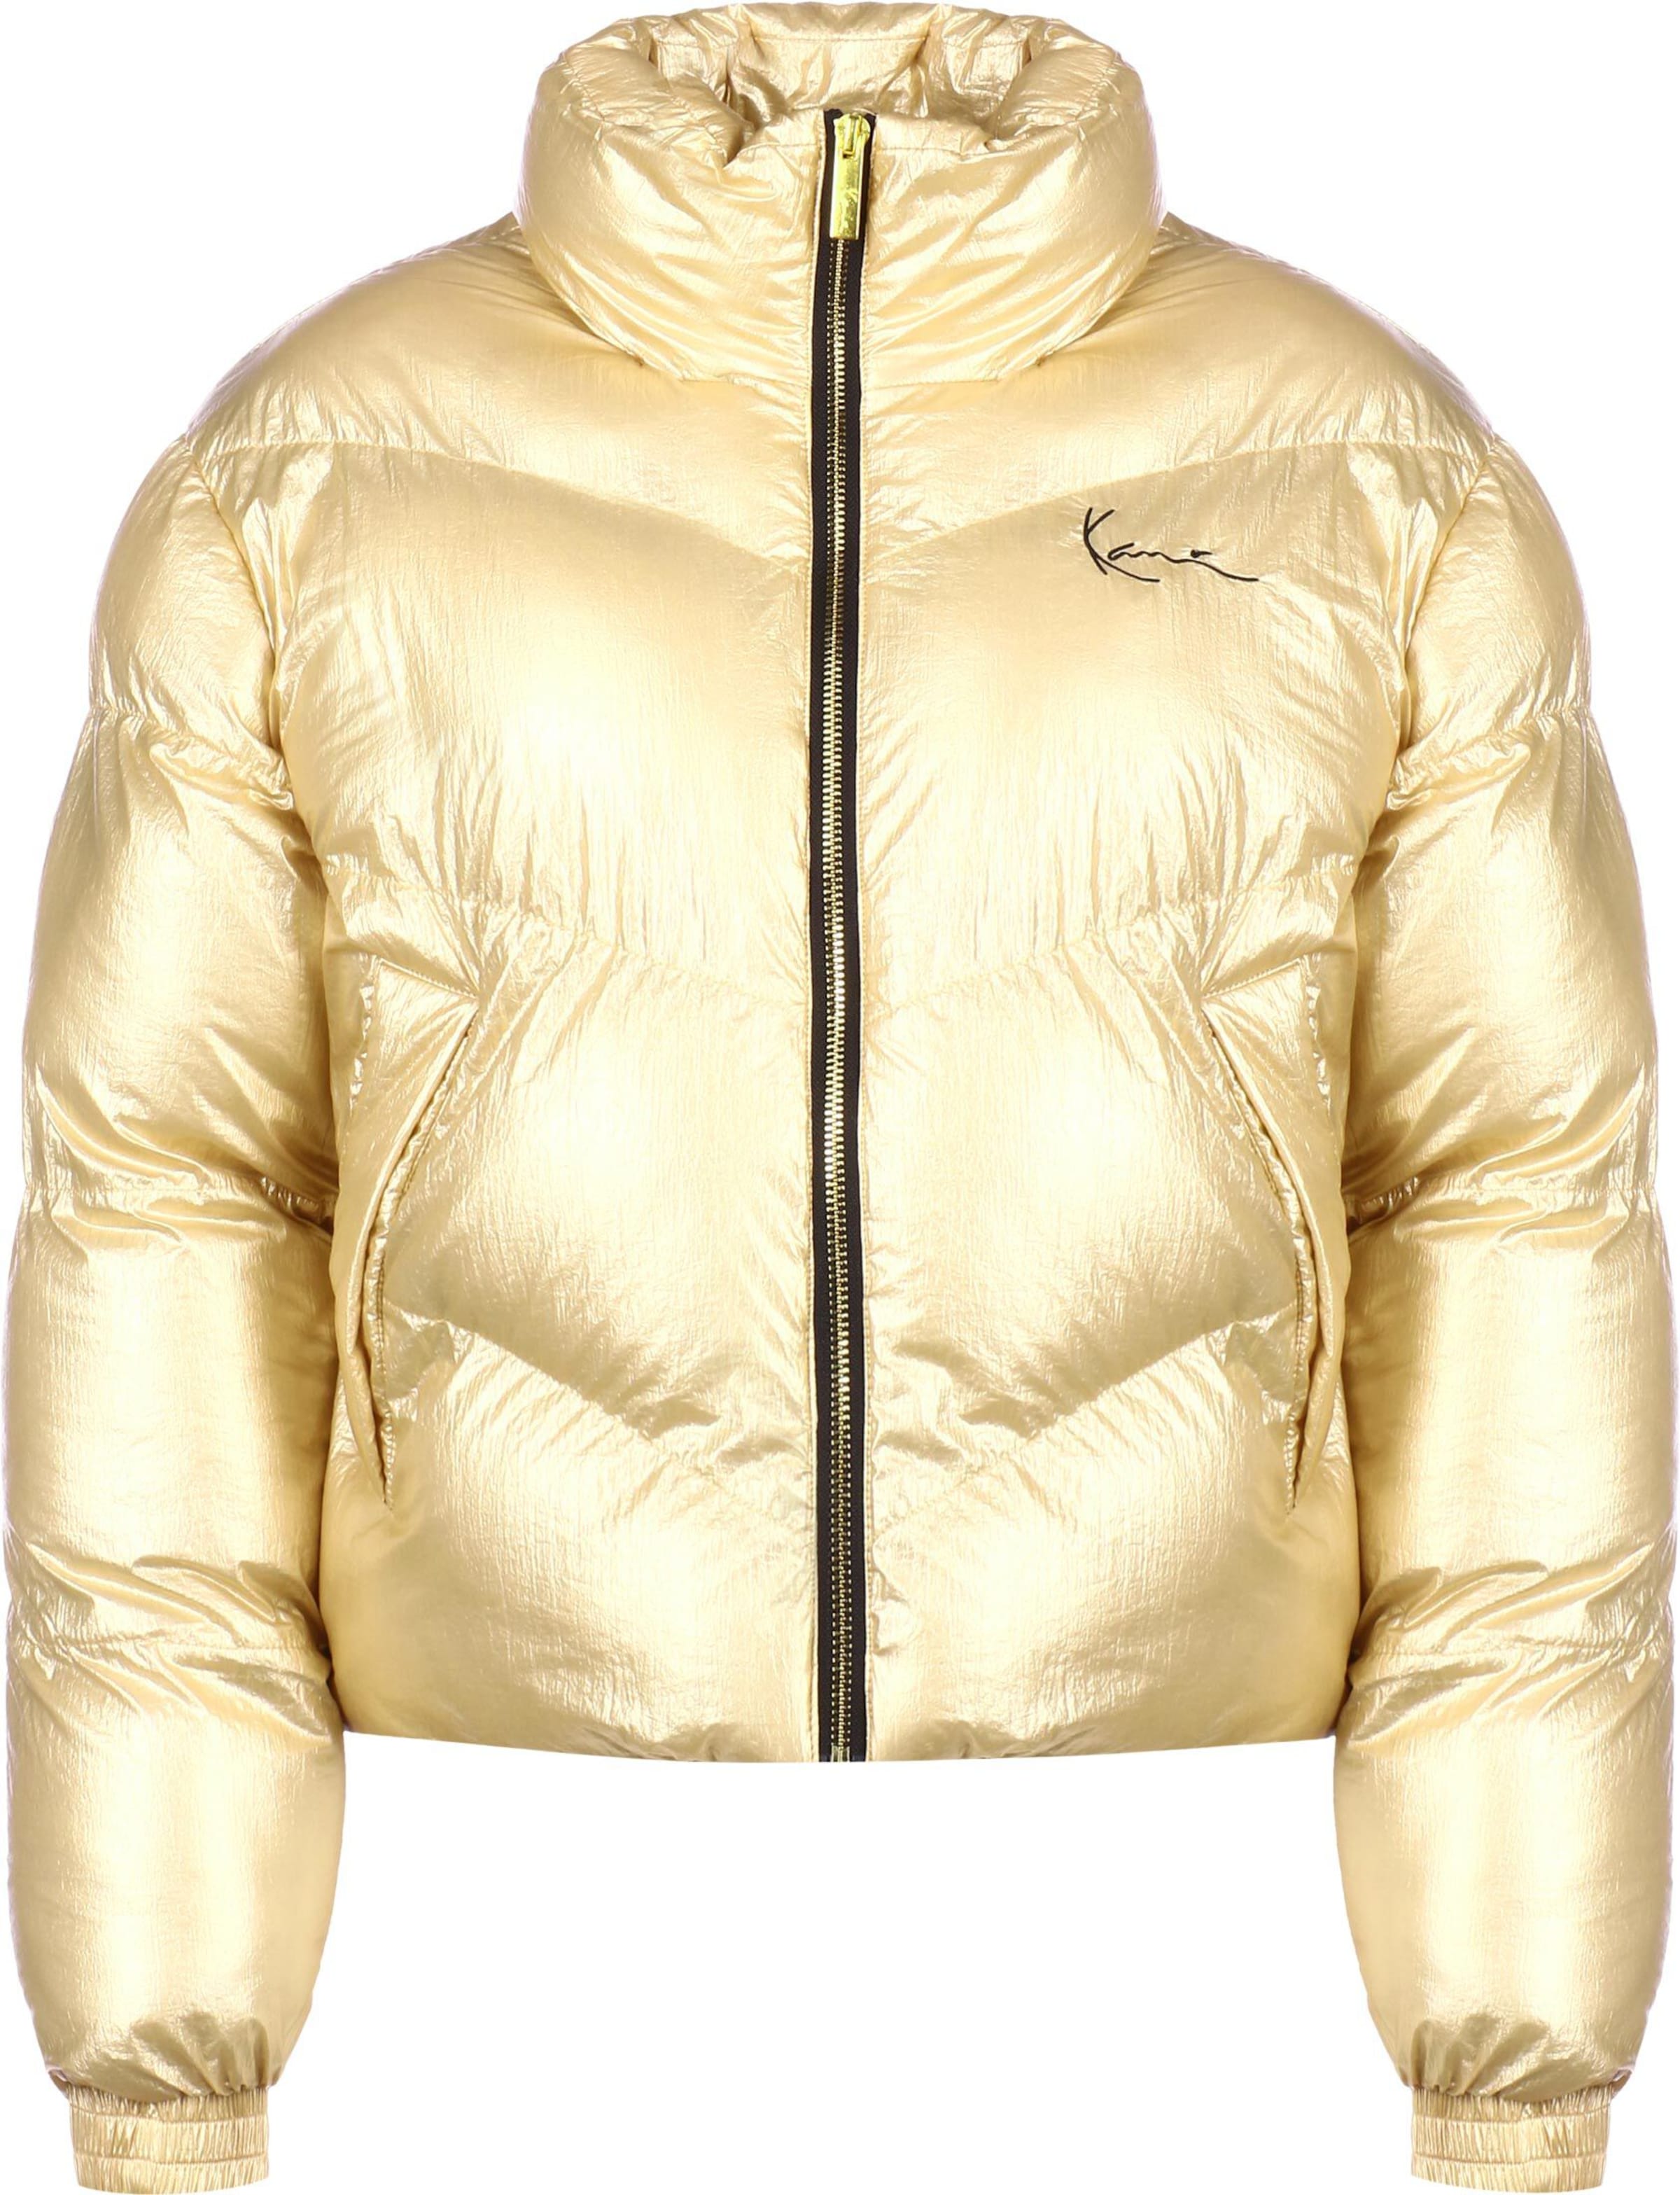 Goldene Jacken für Damen » online kaufen bei ABOUT YOU